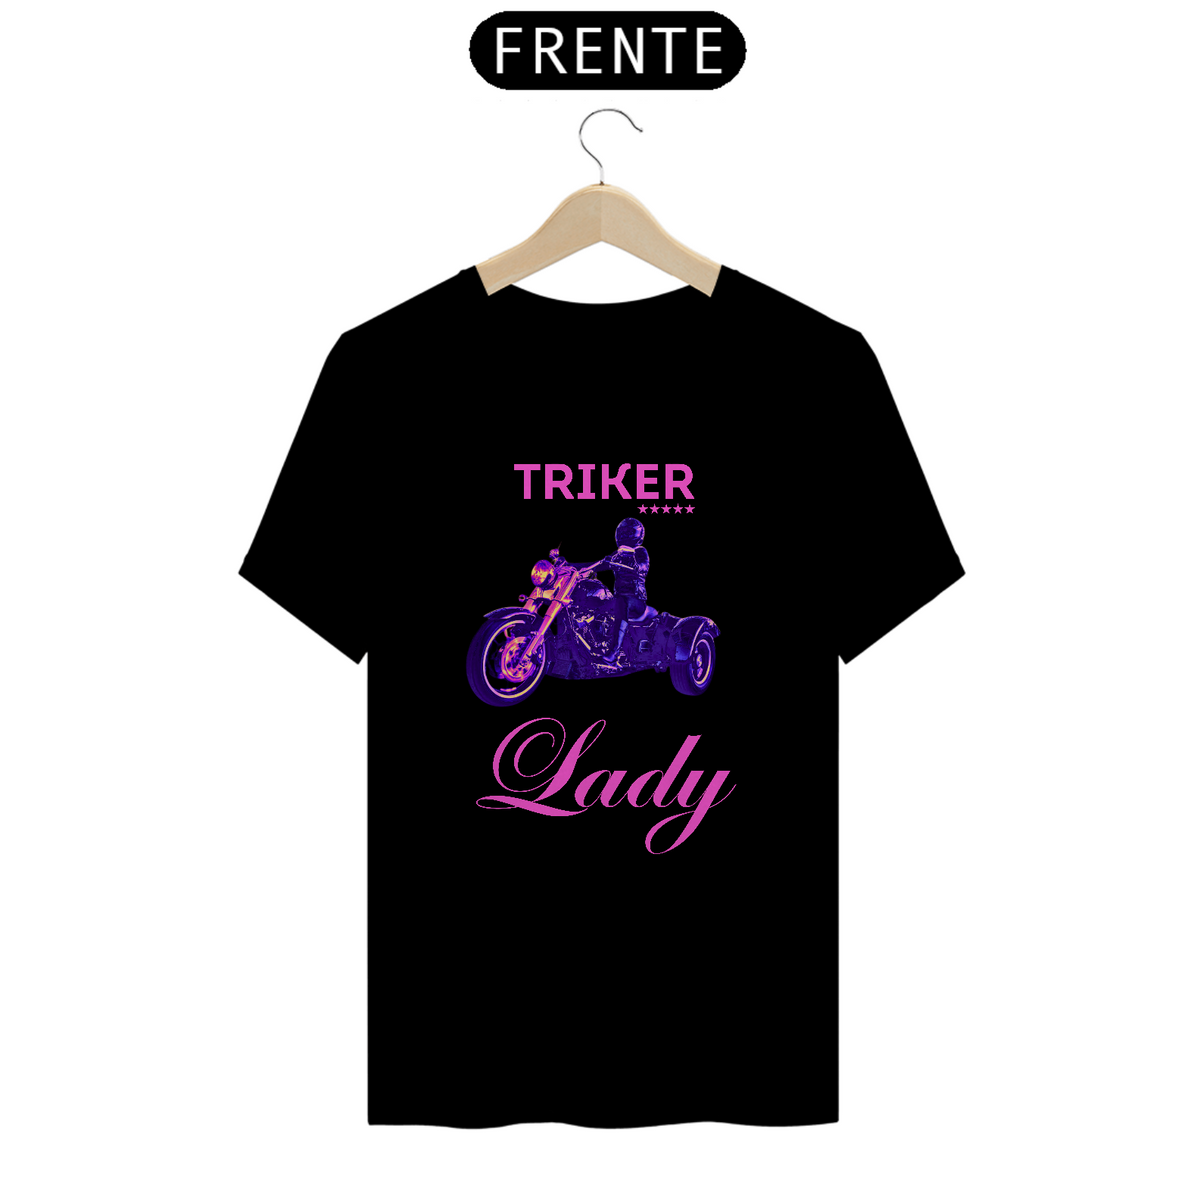 Nome do produto: T-Shirt Trike - Lady